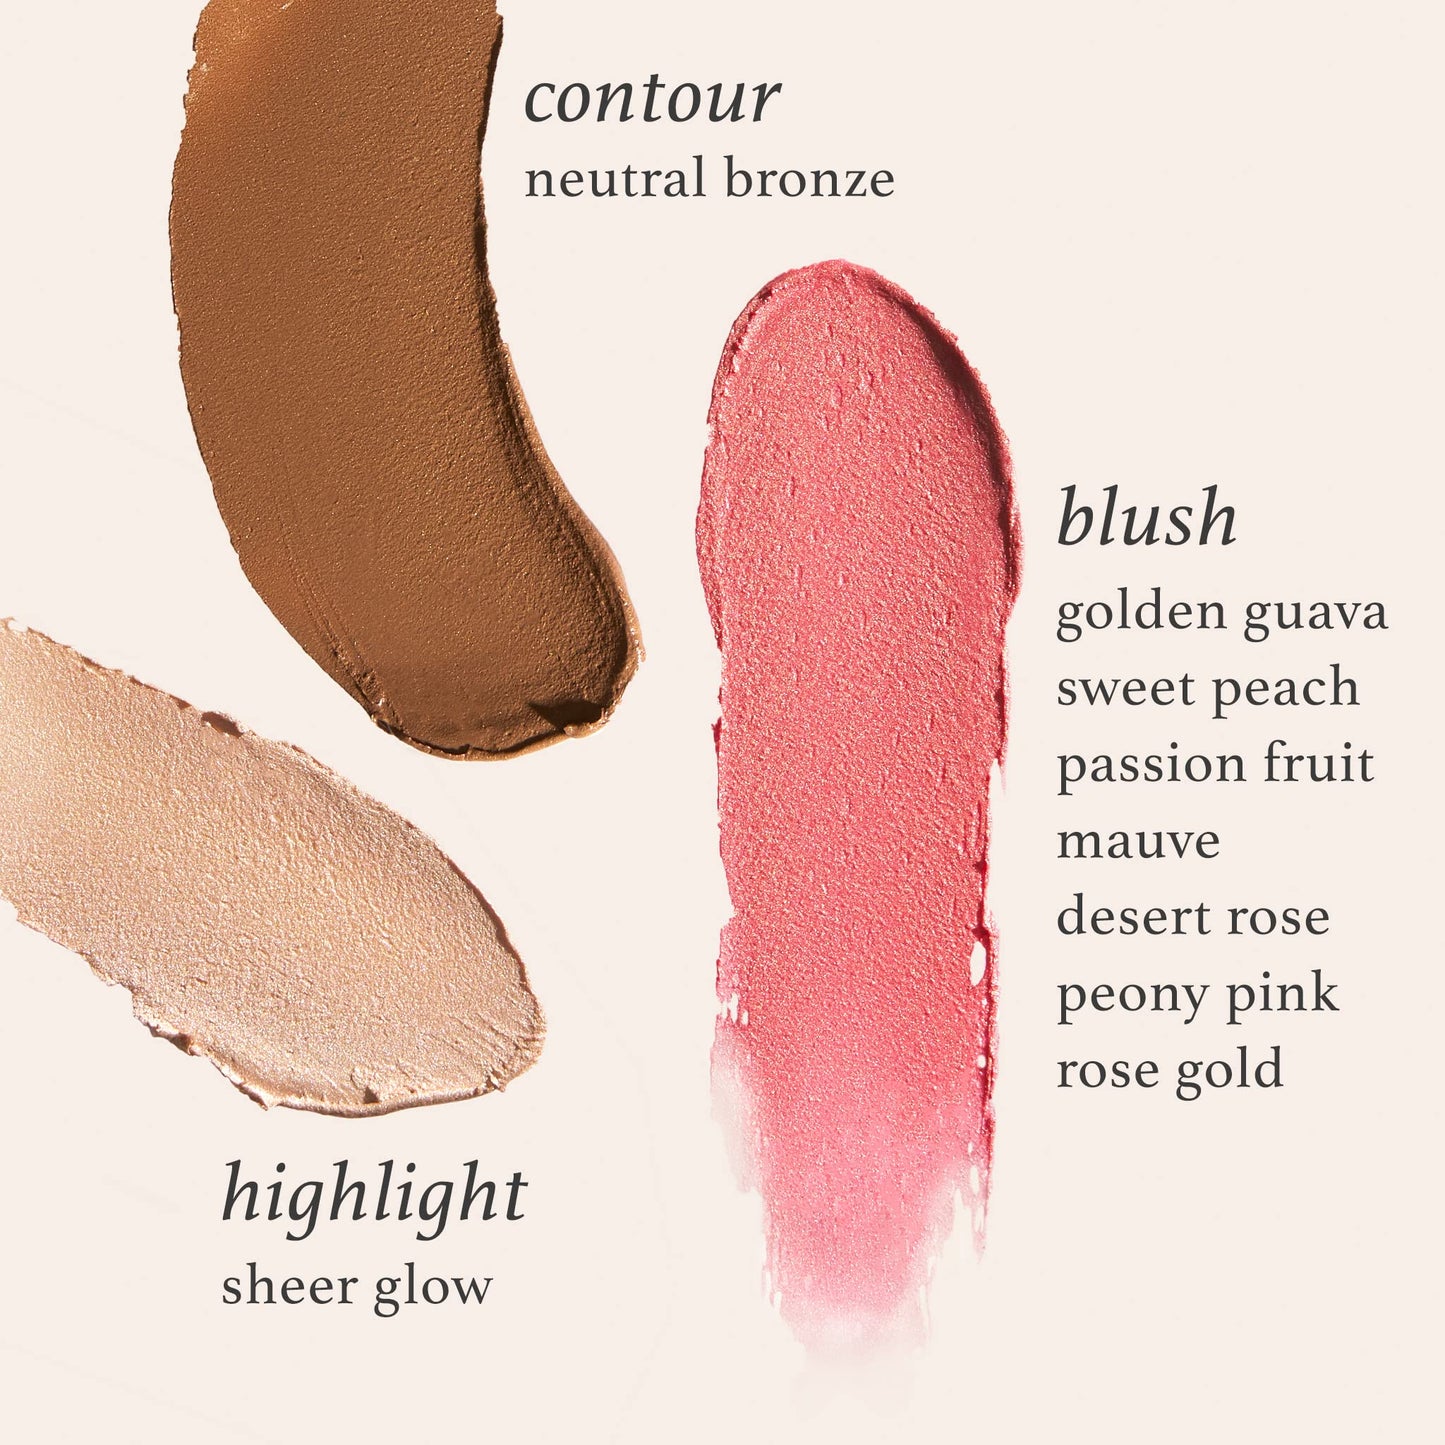 Julep Skip The Brush Crema para rubor en polvo - Oro rosa - Color mezclable y edificable - Rubor 2 en 1 y barra de maquillaje para labios